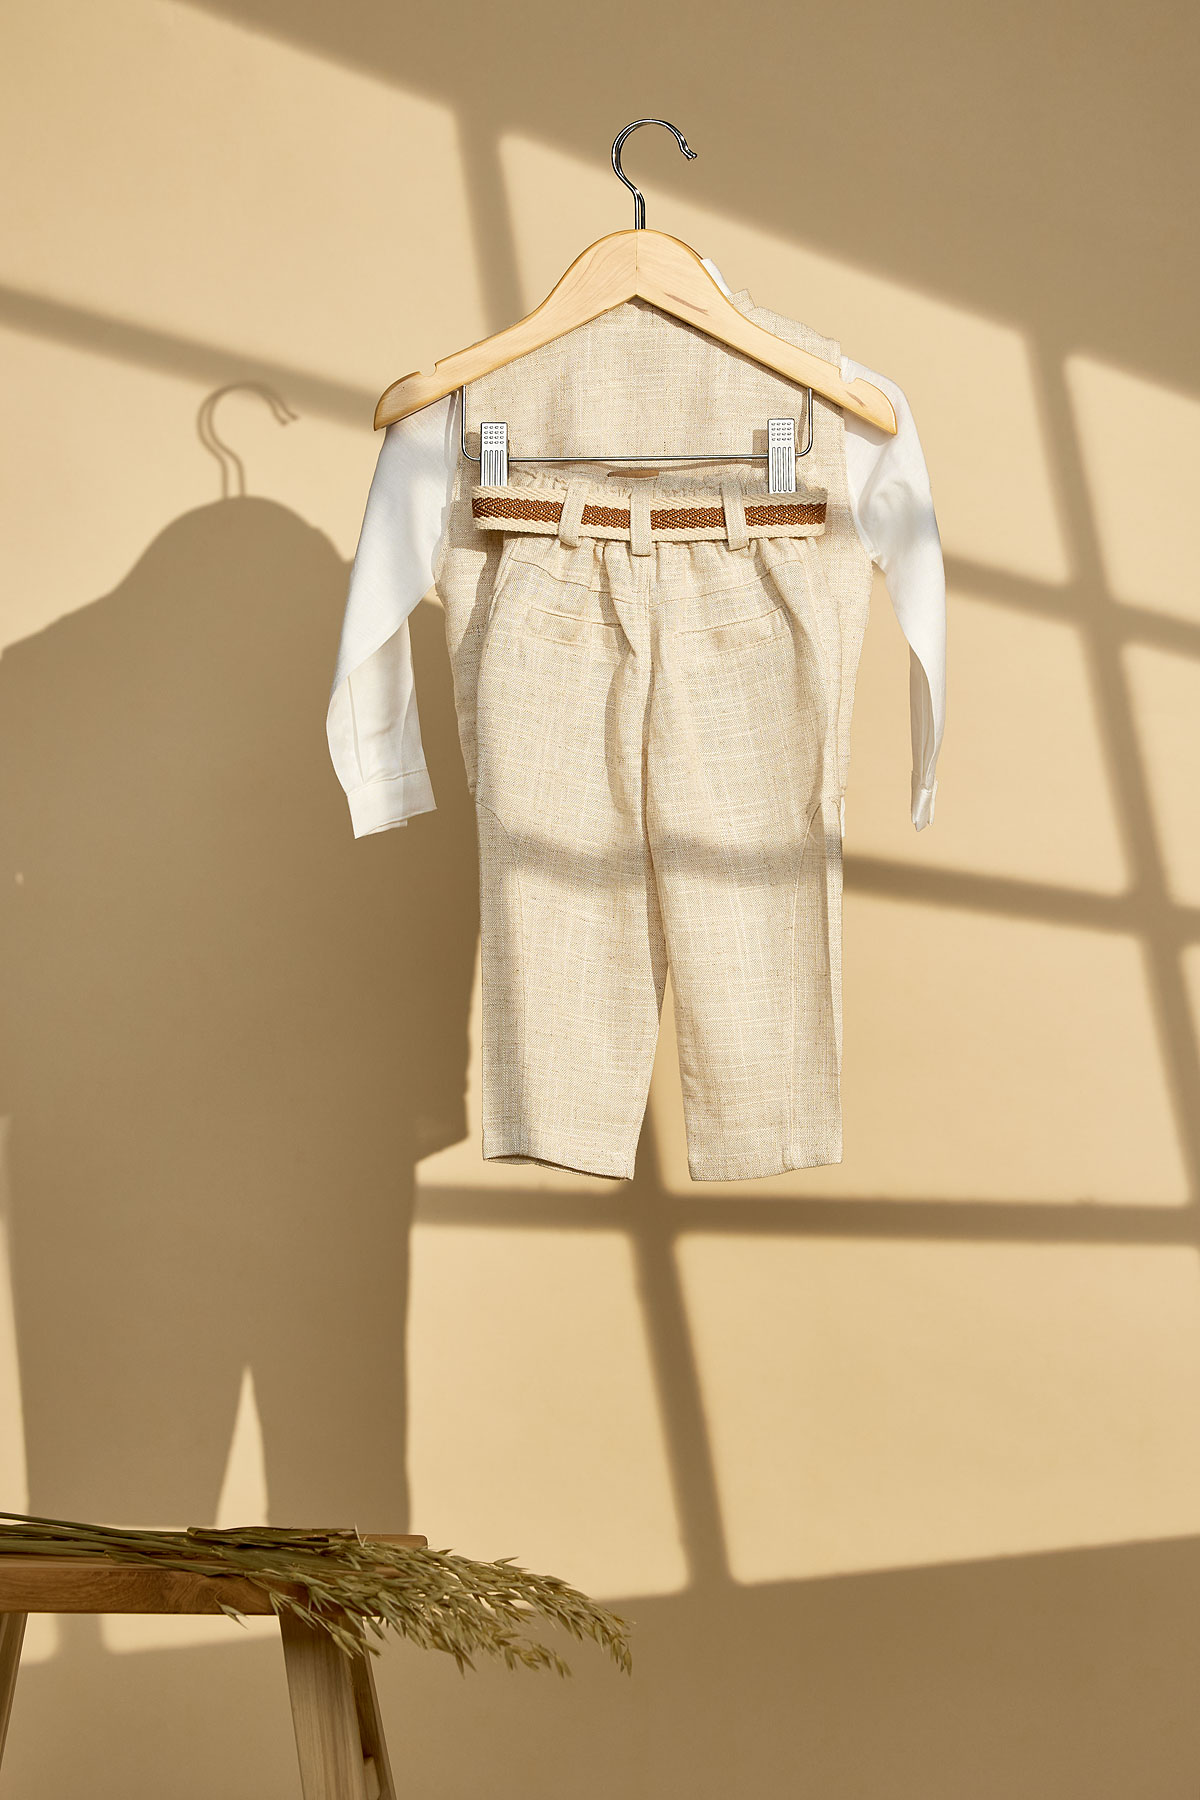 Βαπτιστικό σύνολο με λινό μάο πουκάμισο και γιλέκο και εκρού λινό παντελόνι